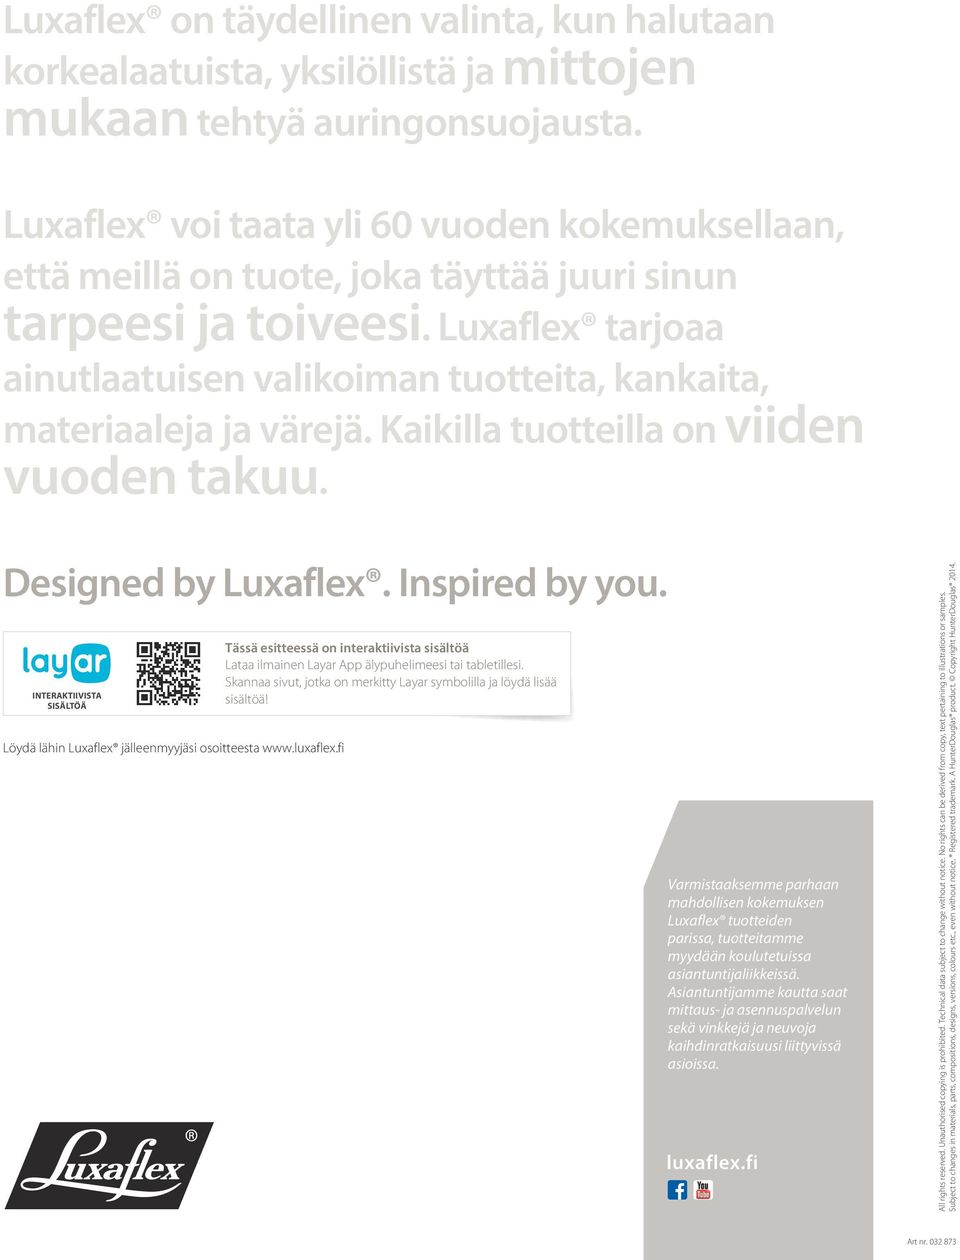 Luxaflex tarjoaa ainutlaatuisen valikoiman tuotteita, kankaita, materiaaleja ja värejä. Kaikilla tuotteilla on viiden vuoden takuu. Designed by Luxaflex. Inspired by you.